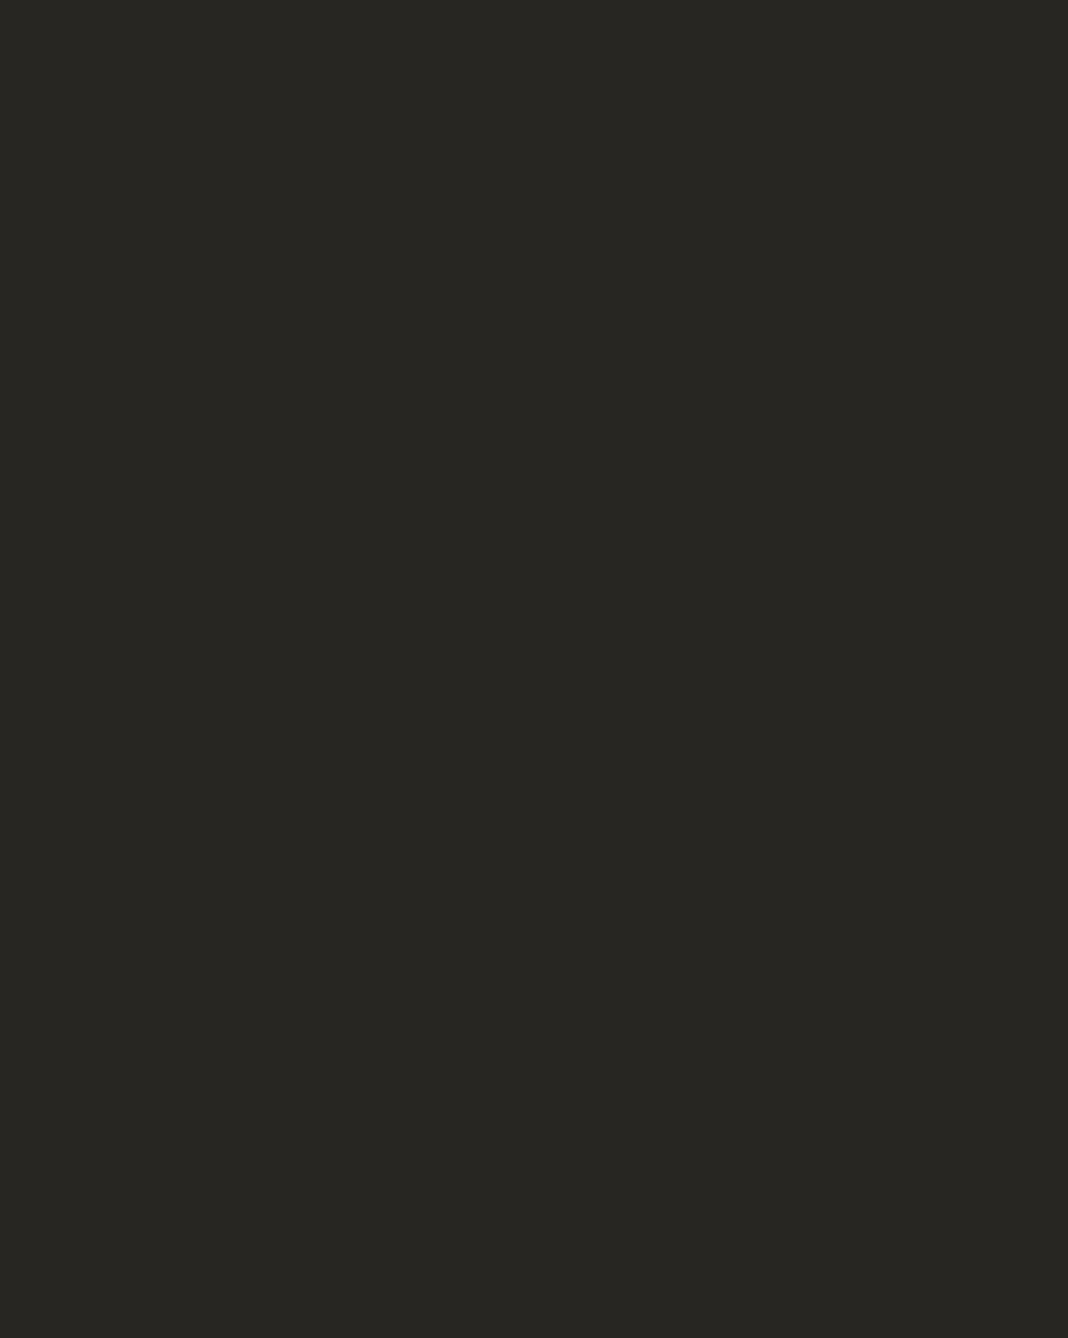 Николай Кузнецов. Портрет Петра Чайковского (фрагмент). 1893. Государственная Третьяковская галерея, Москва